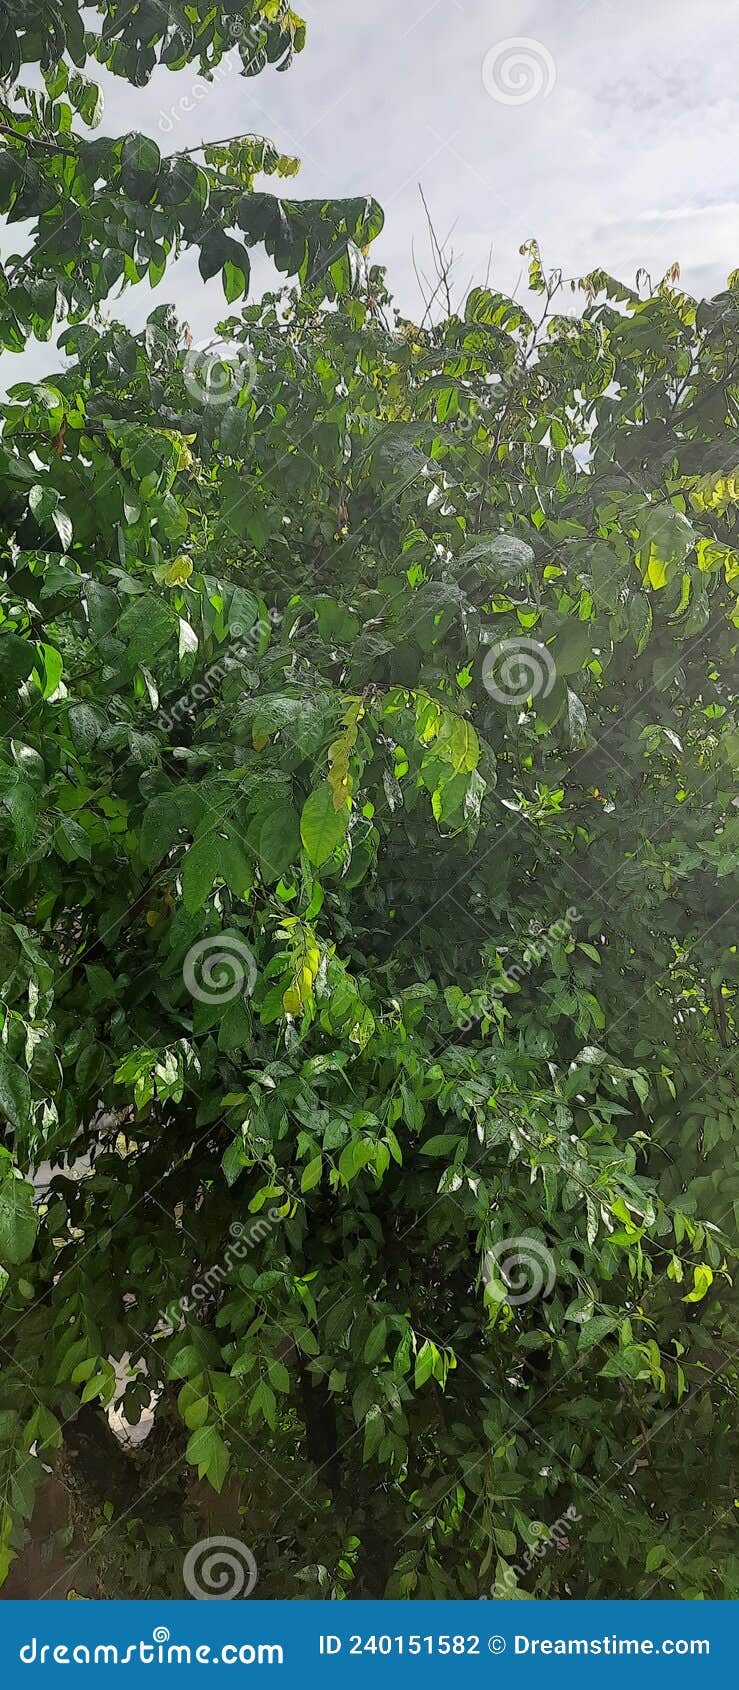 ÃÂrvore arbusto tree leafs  bush